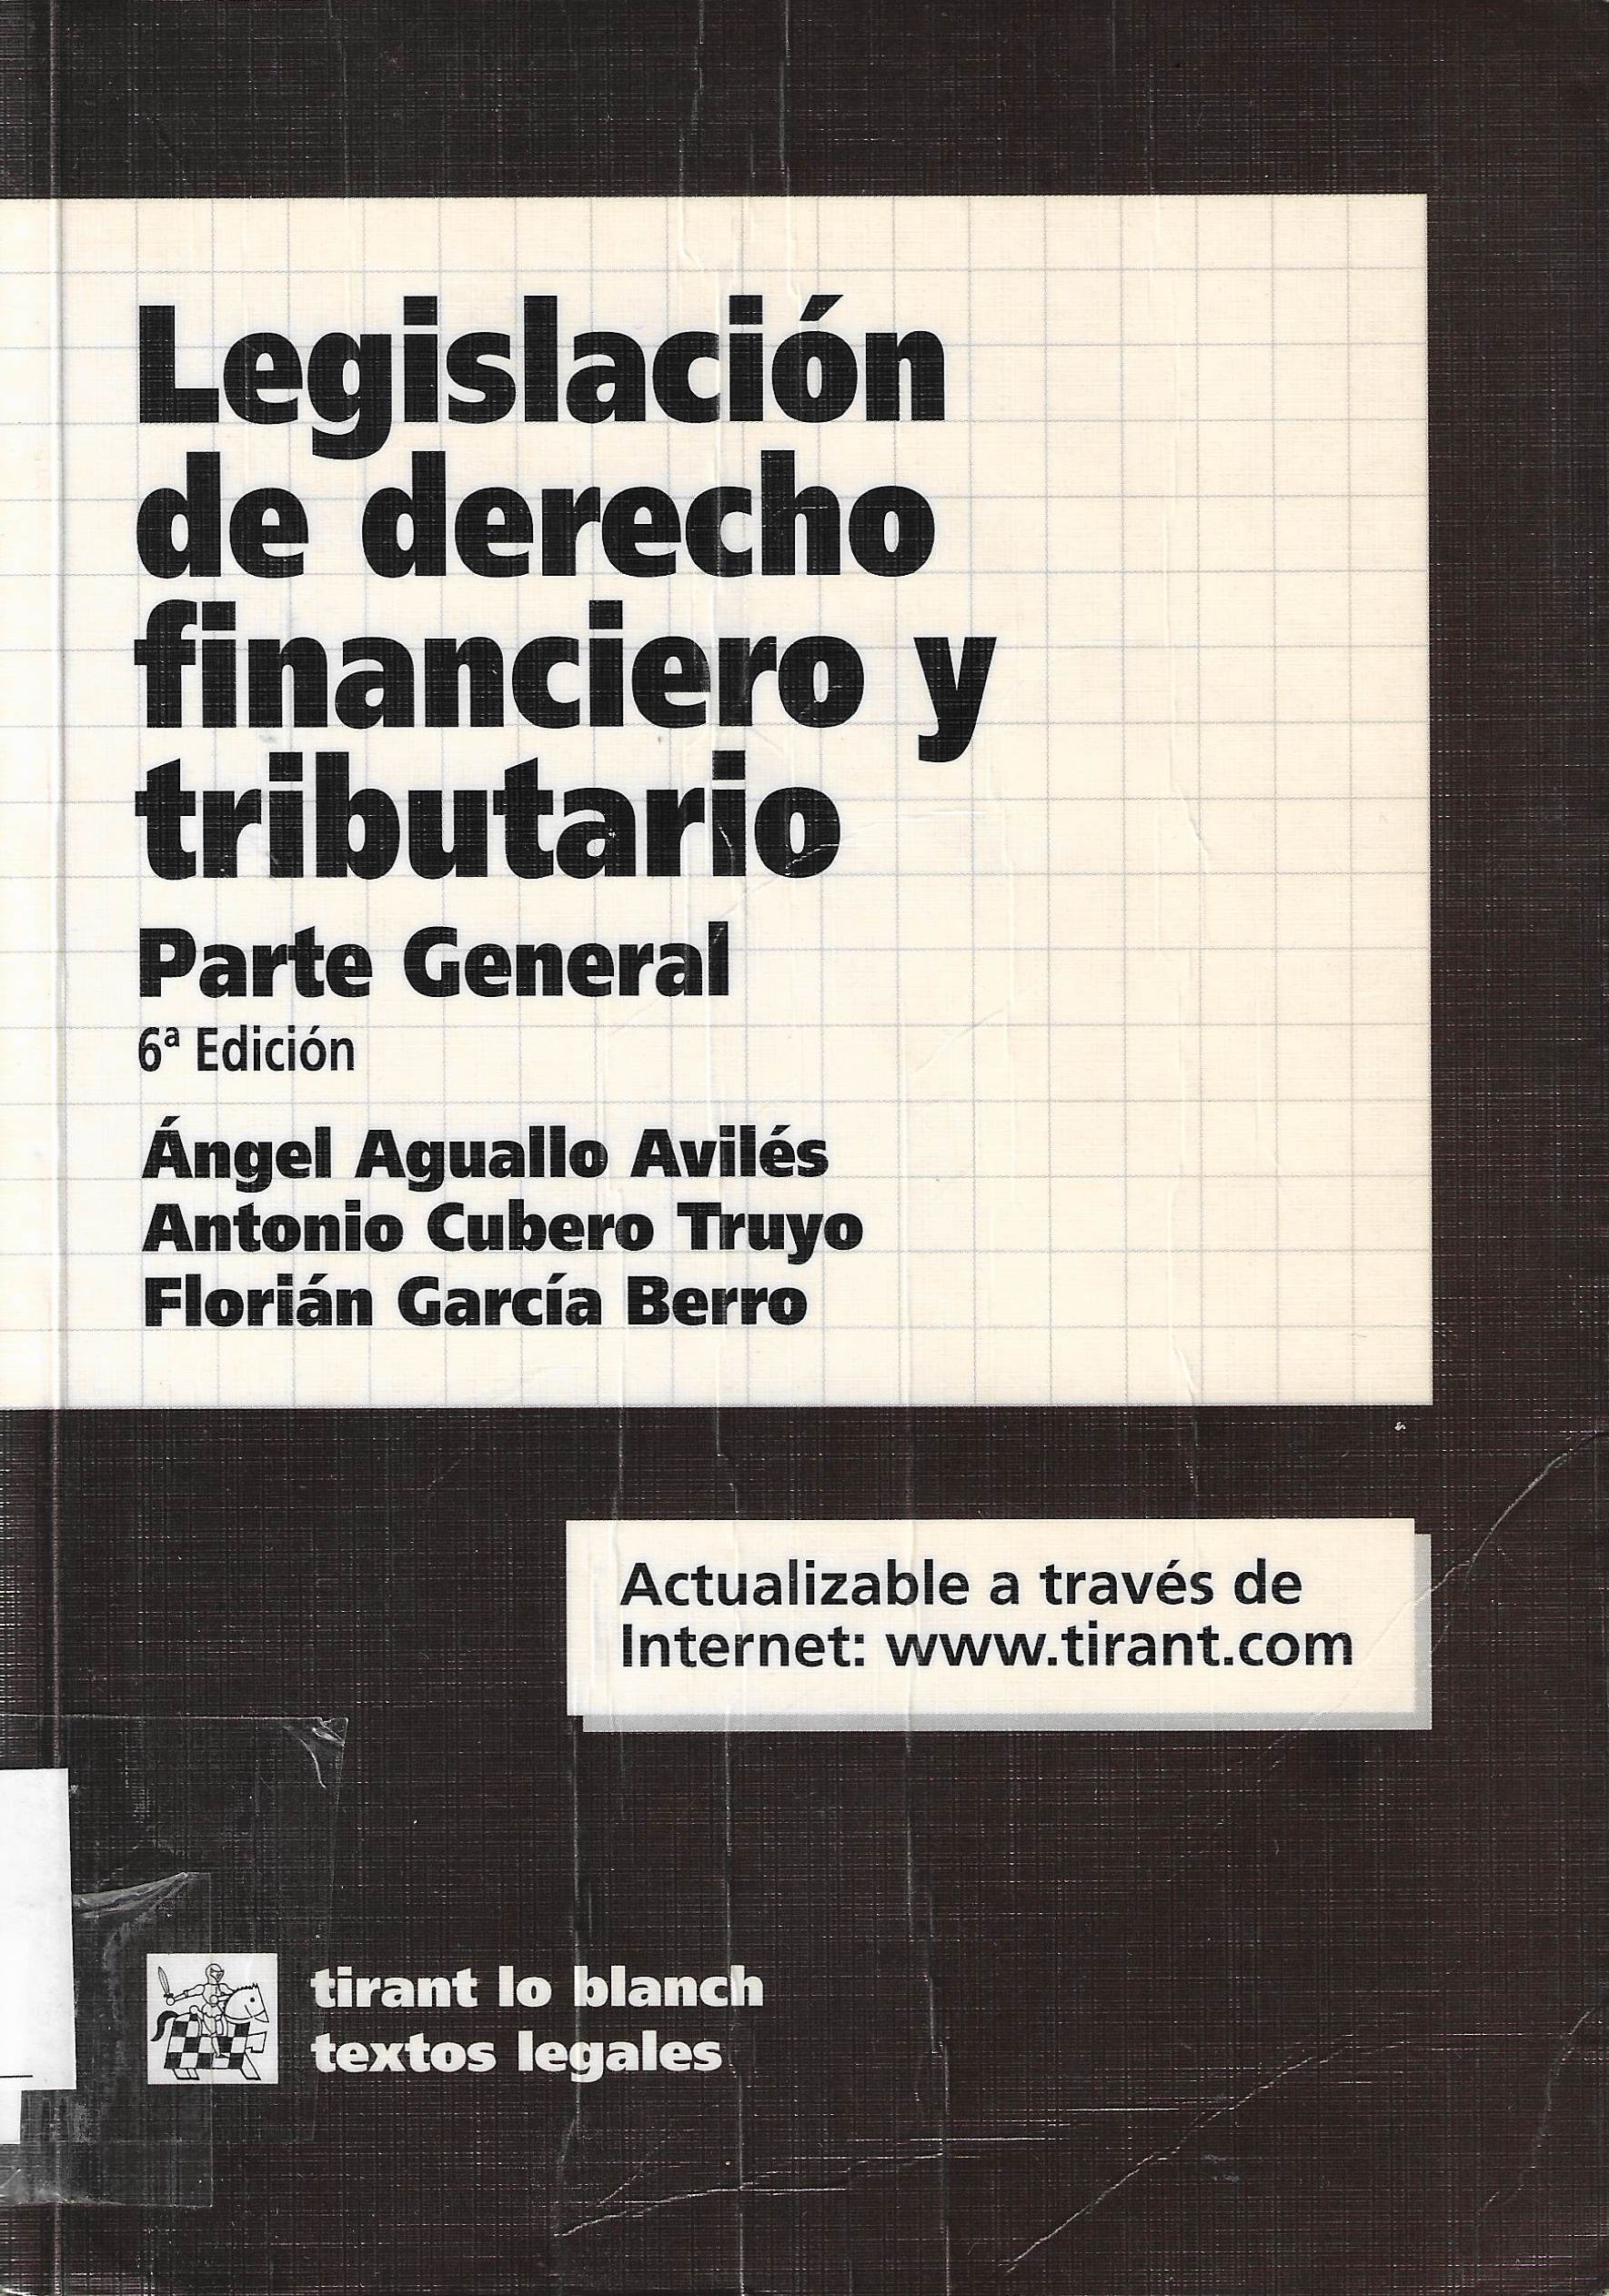 Imagen de portada del libro Legislación de derecho financiero y tributario